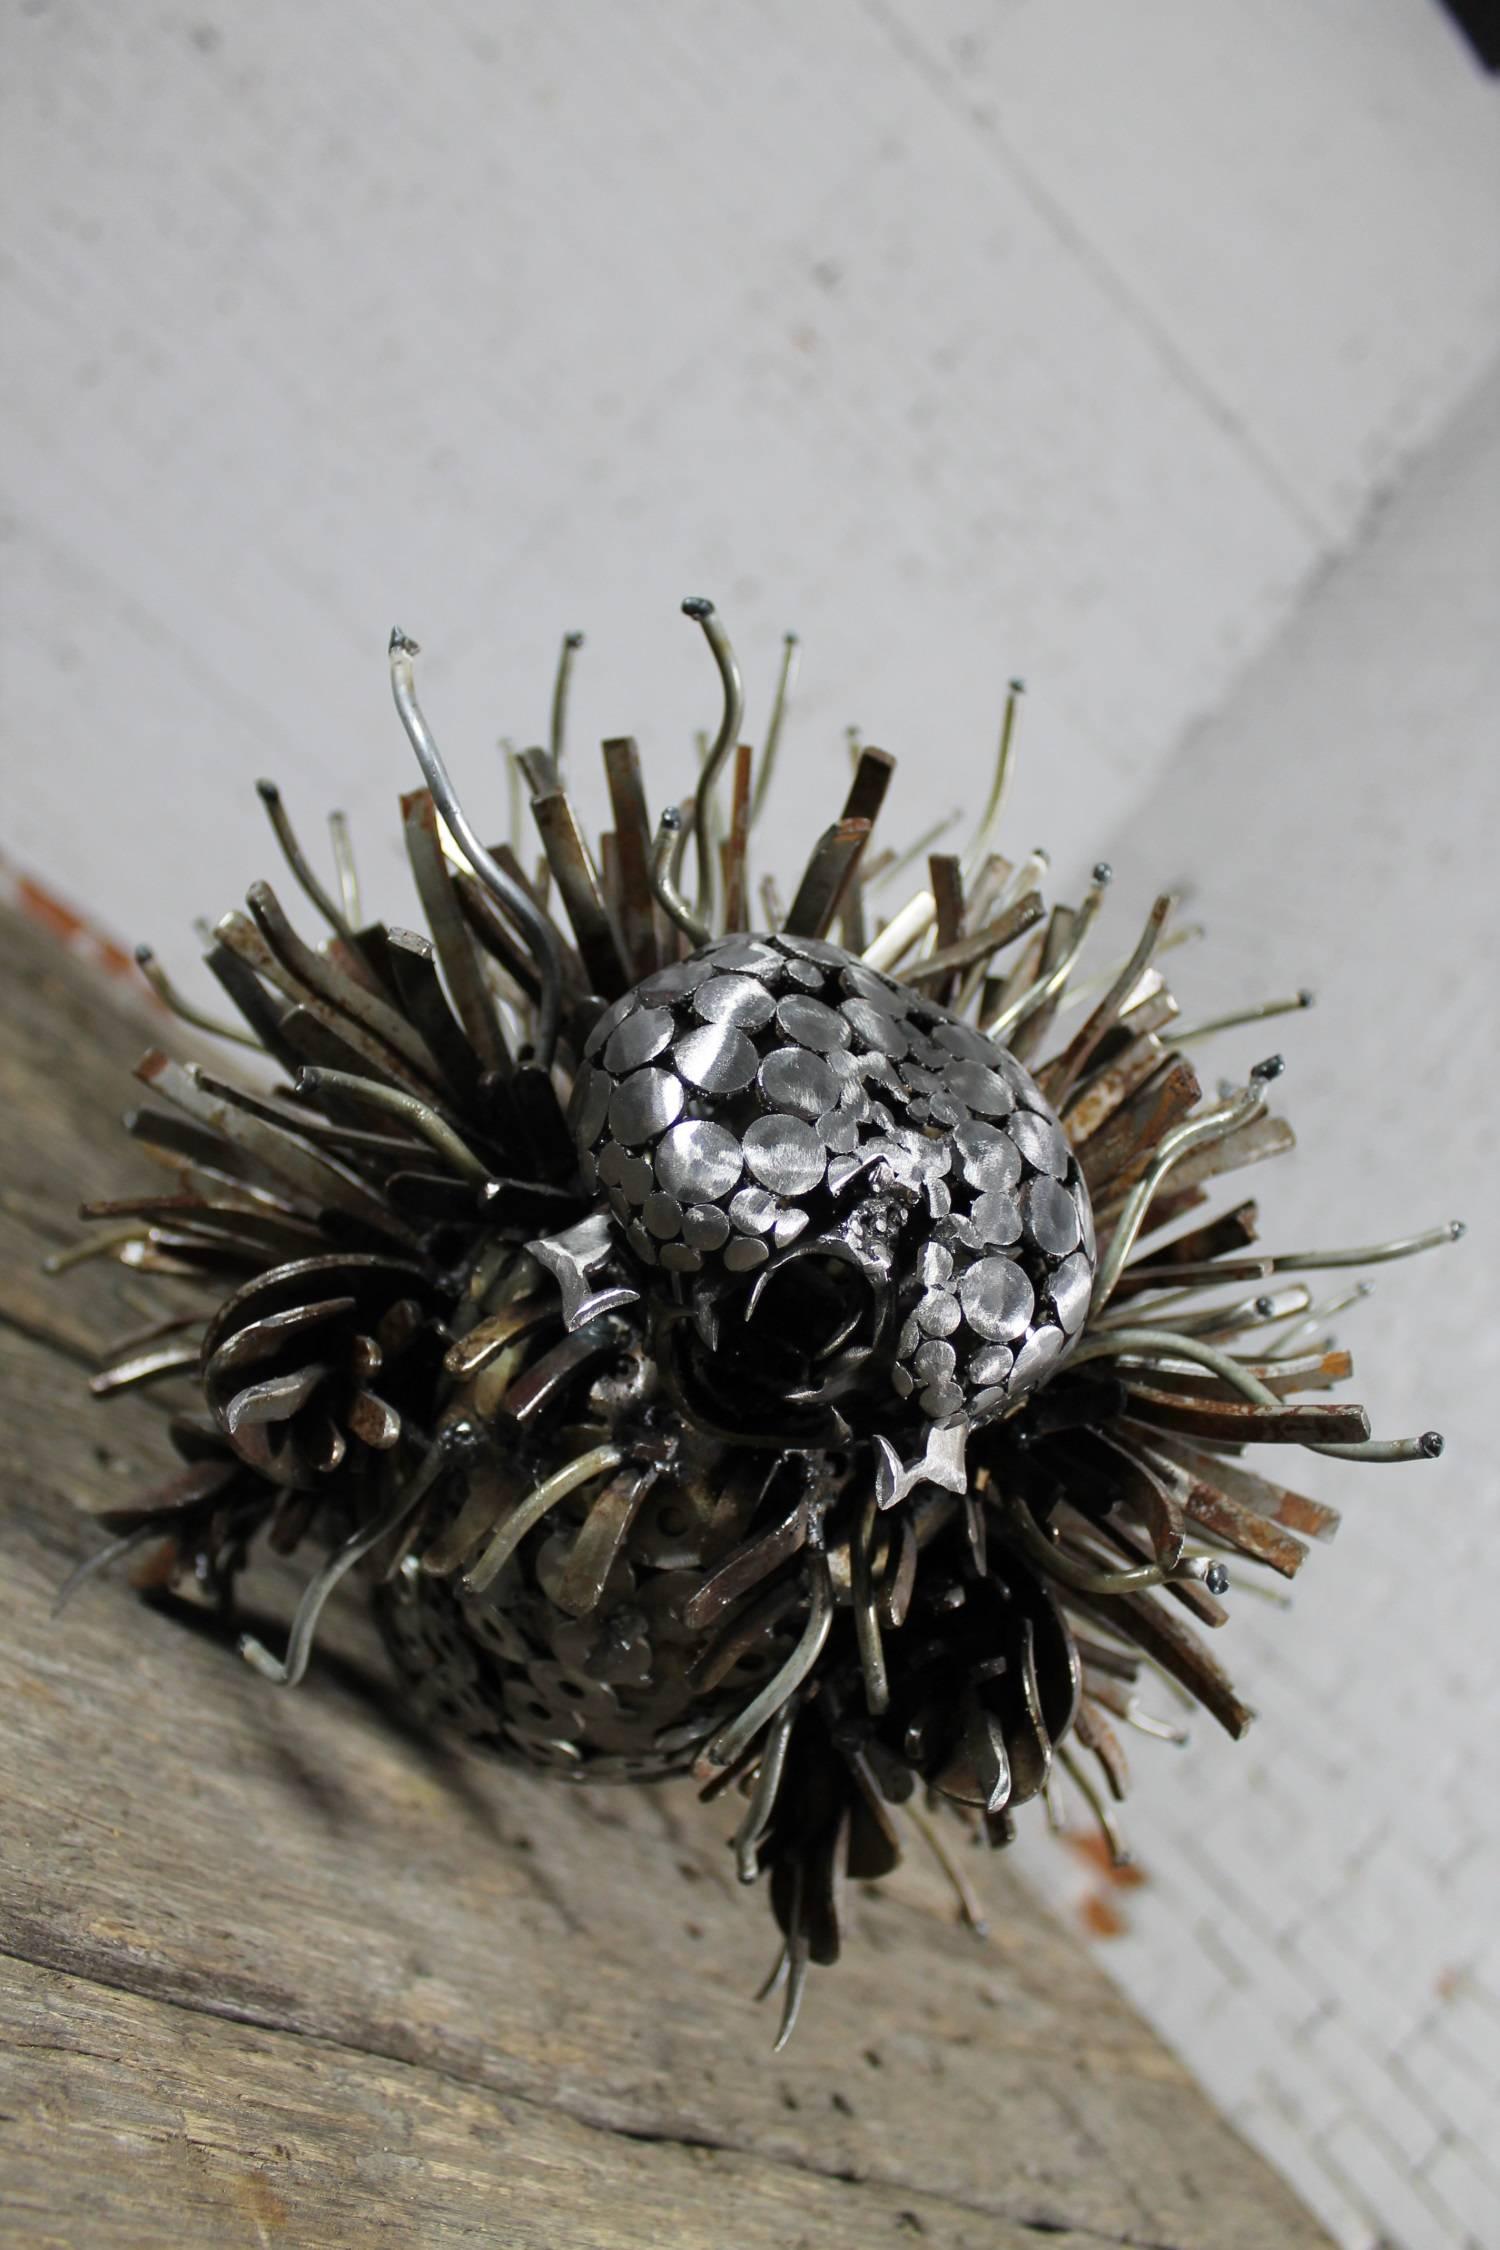 Contemporary Caterpillar Sculpture or Garden Art of Reclaimed Metal by Jason Startup